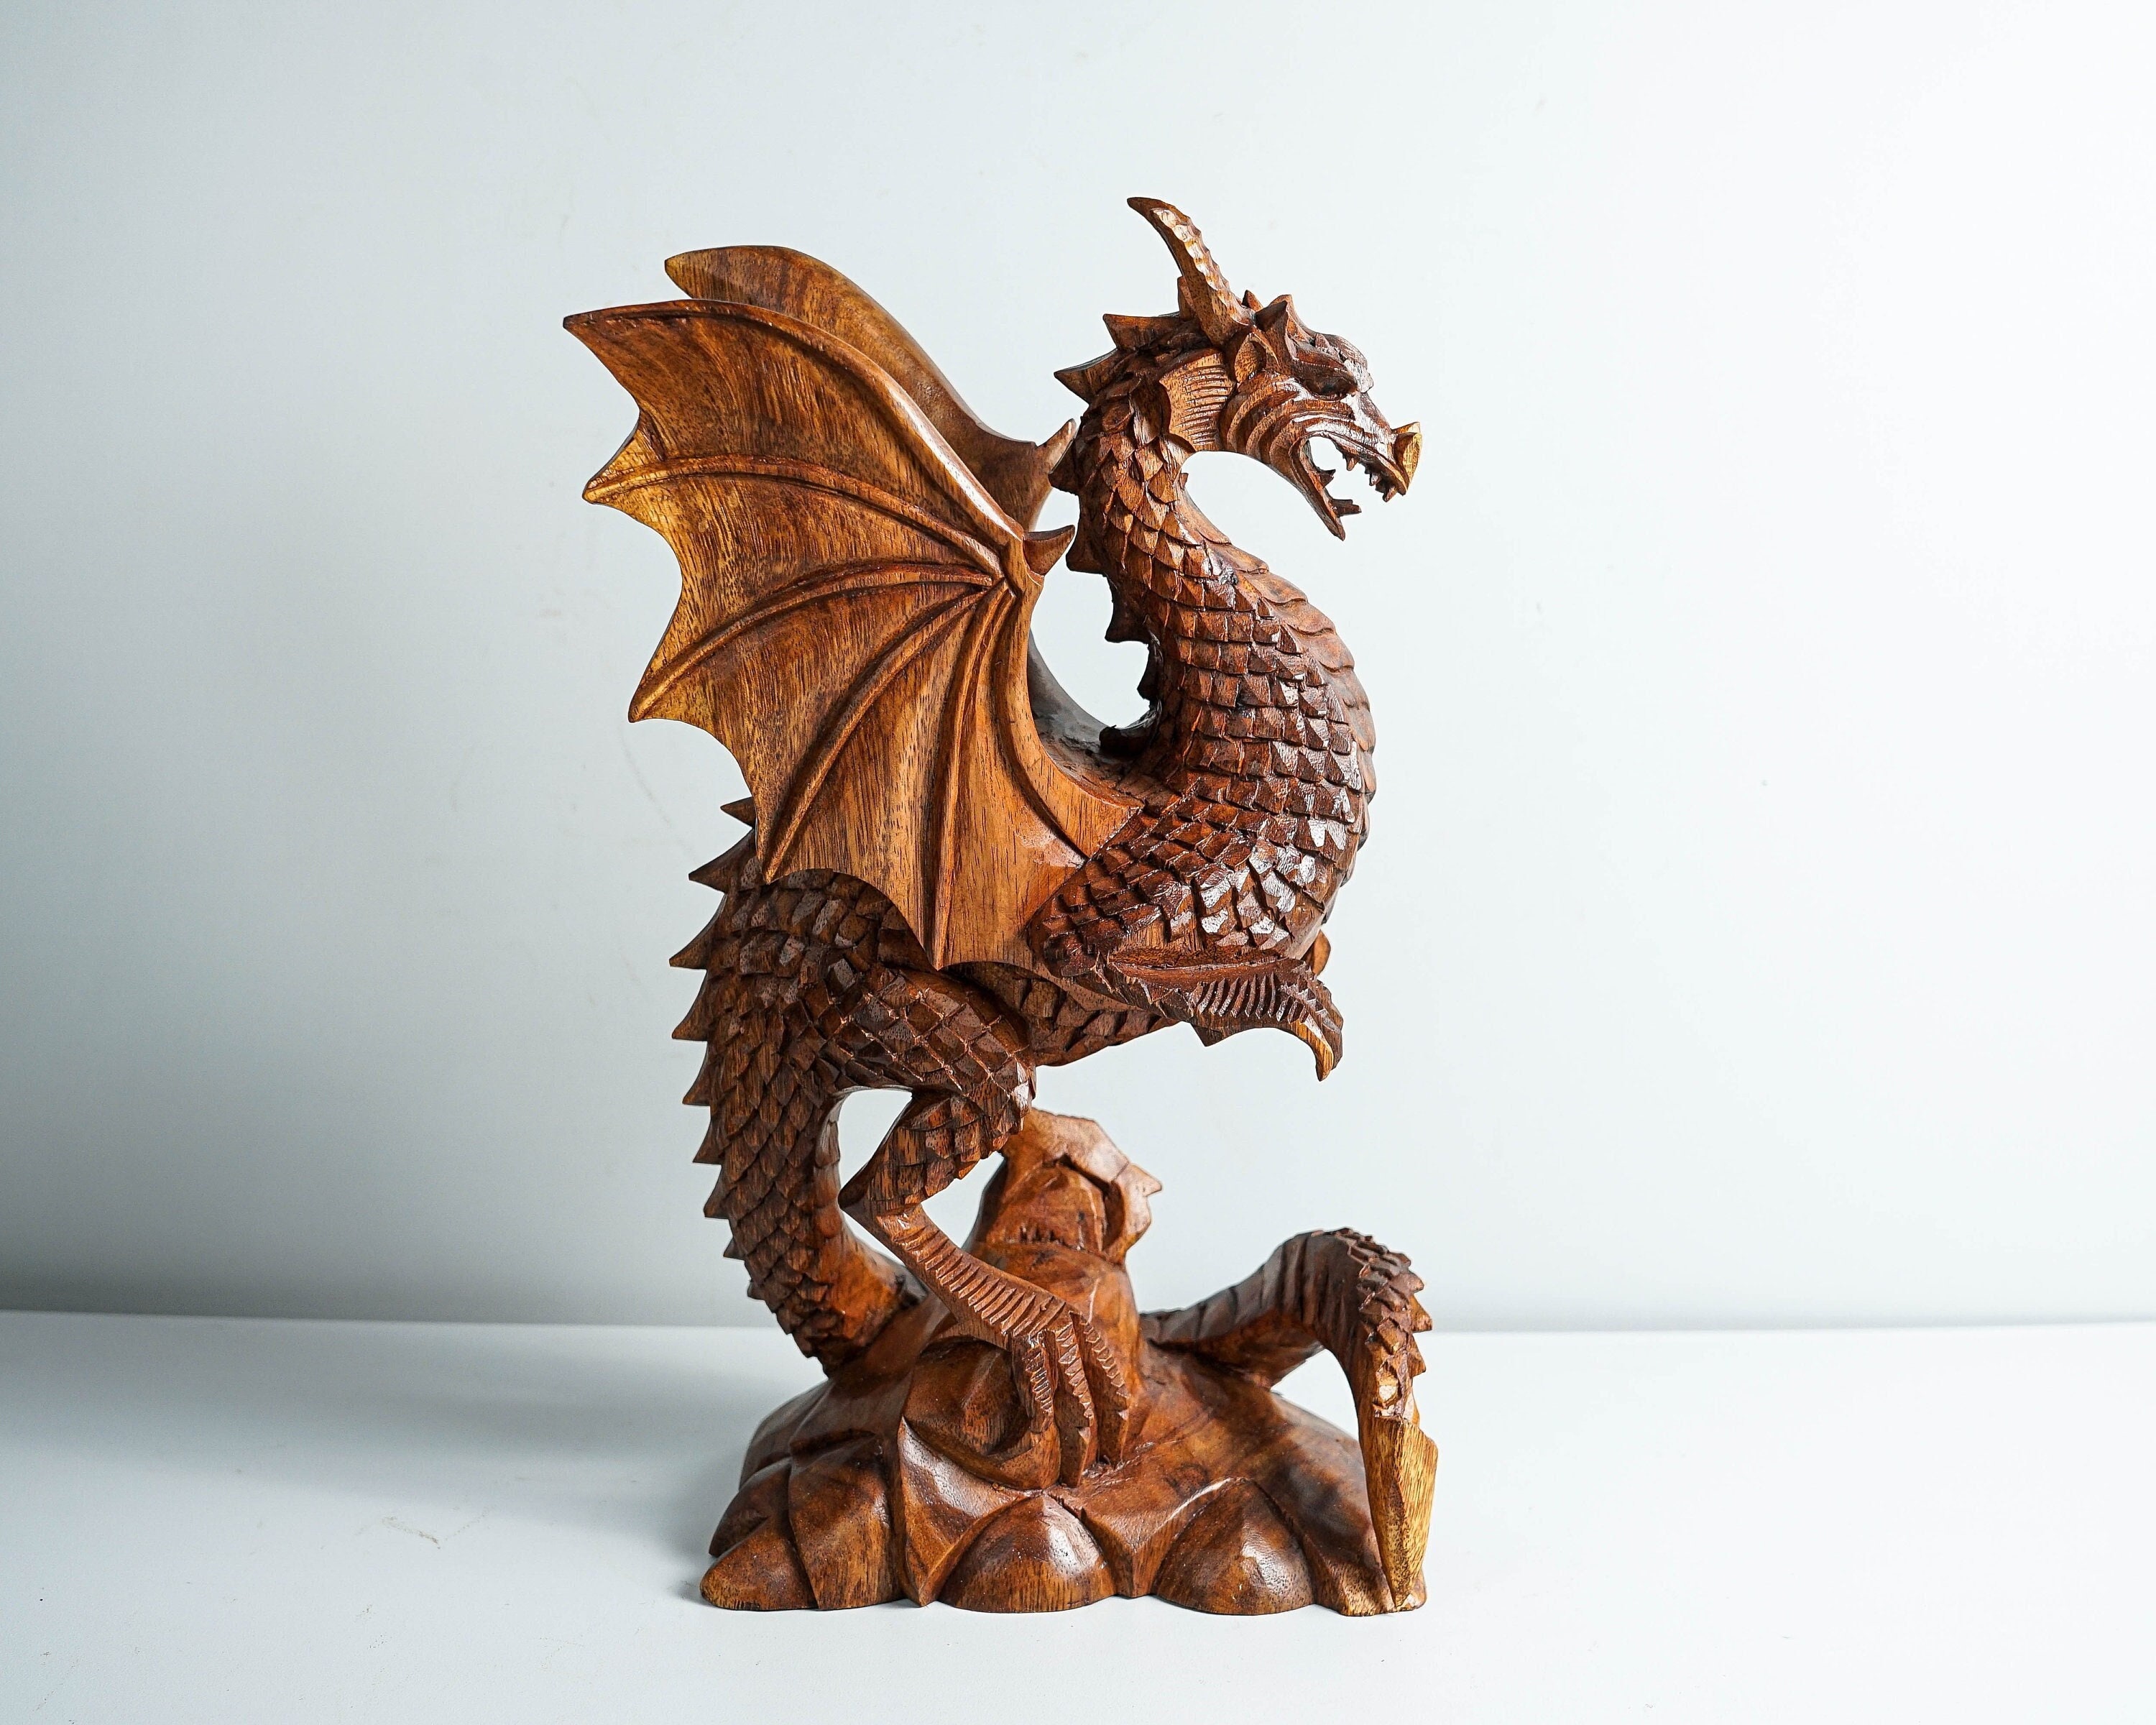 Dragon Statue, Dragon Figurine, Mythology Animal, Wood Carving